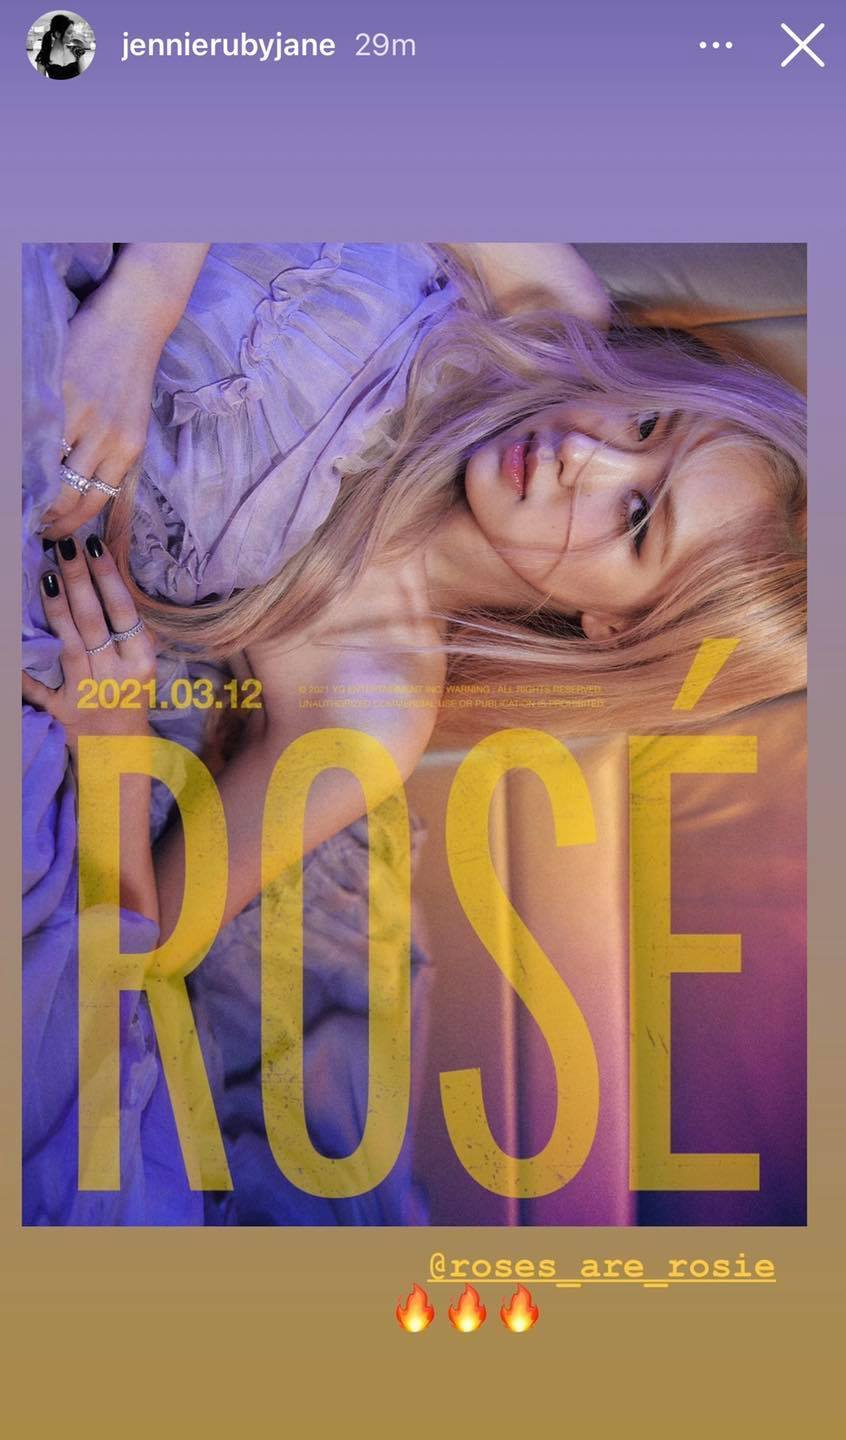  
Nữ idol đăng tải bài viết đầu tiên sau hẹn hò, chúc mừng Rosé. (Ảnh: Chụp màn hình)